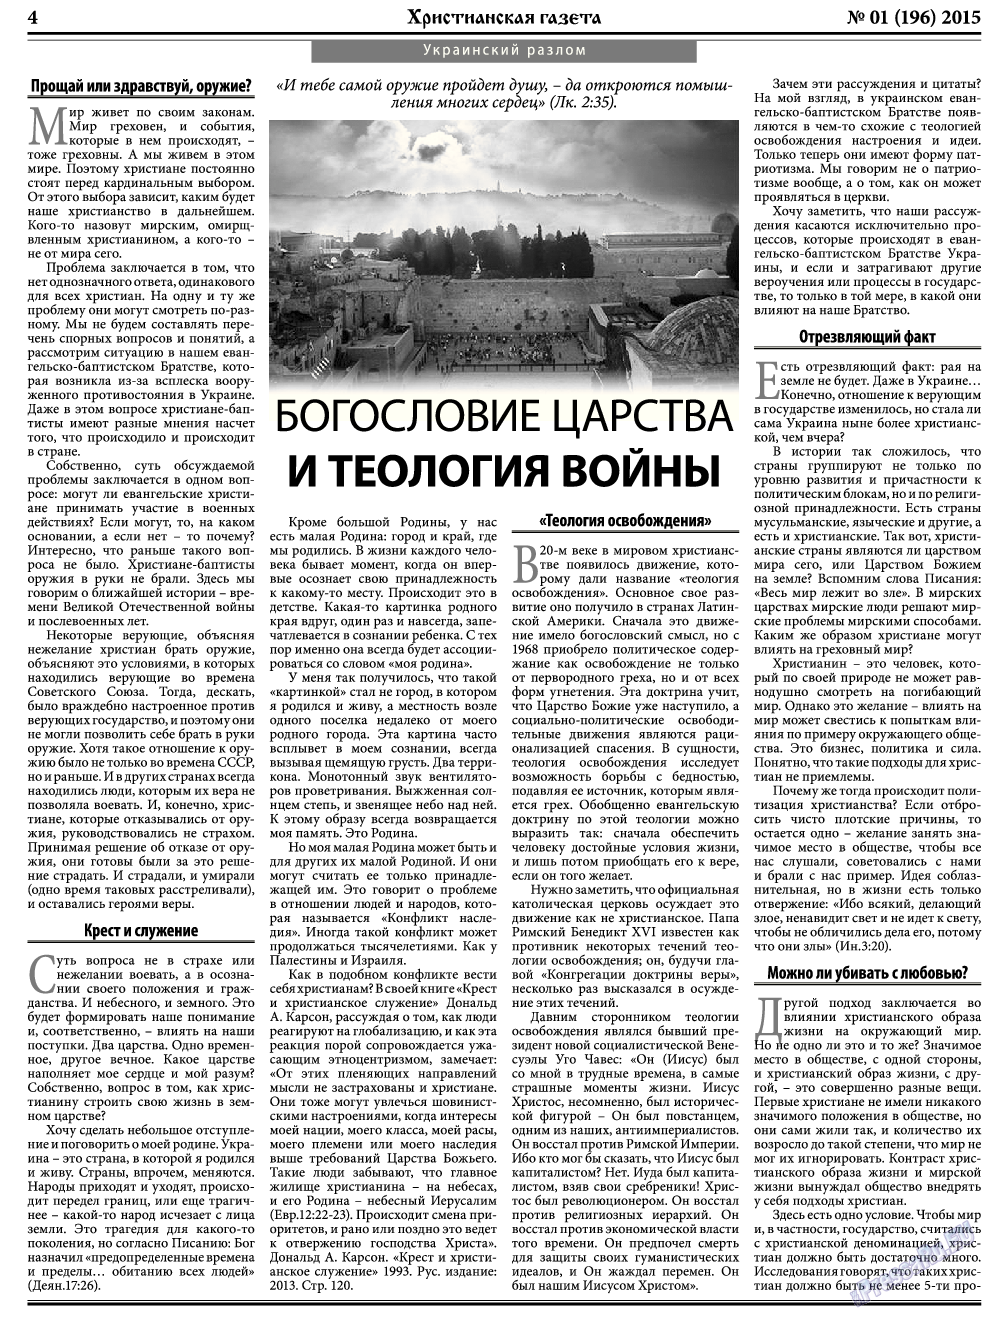 Христианская газета, газета. 2015 №1 стр.4